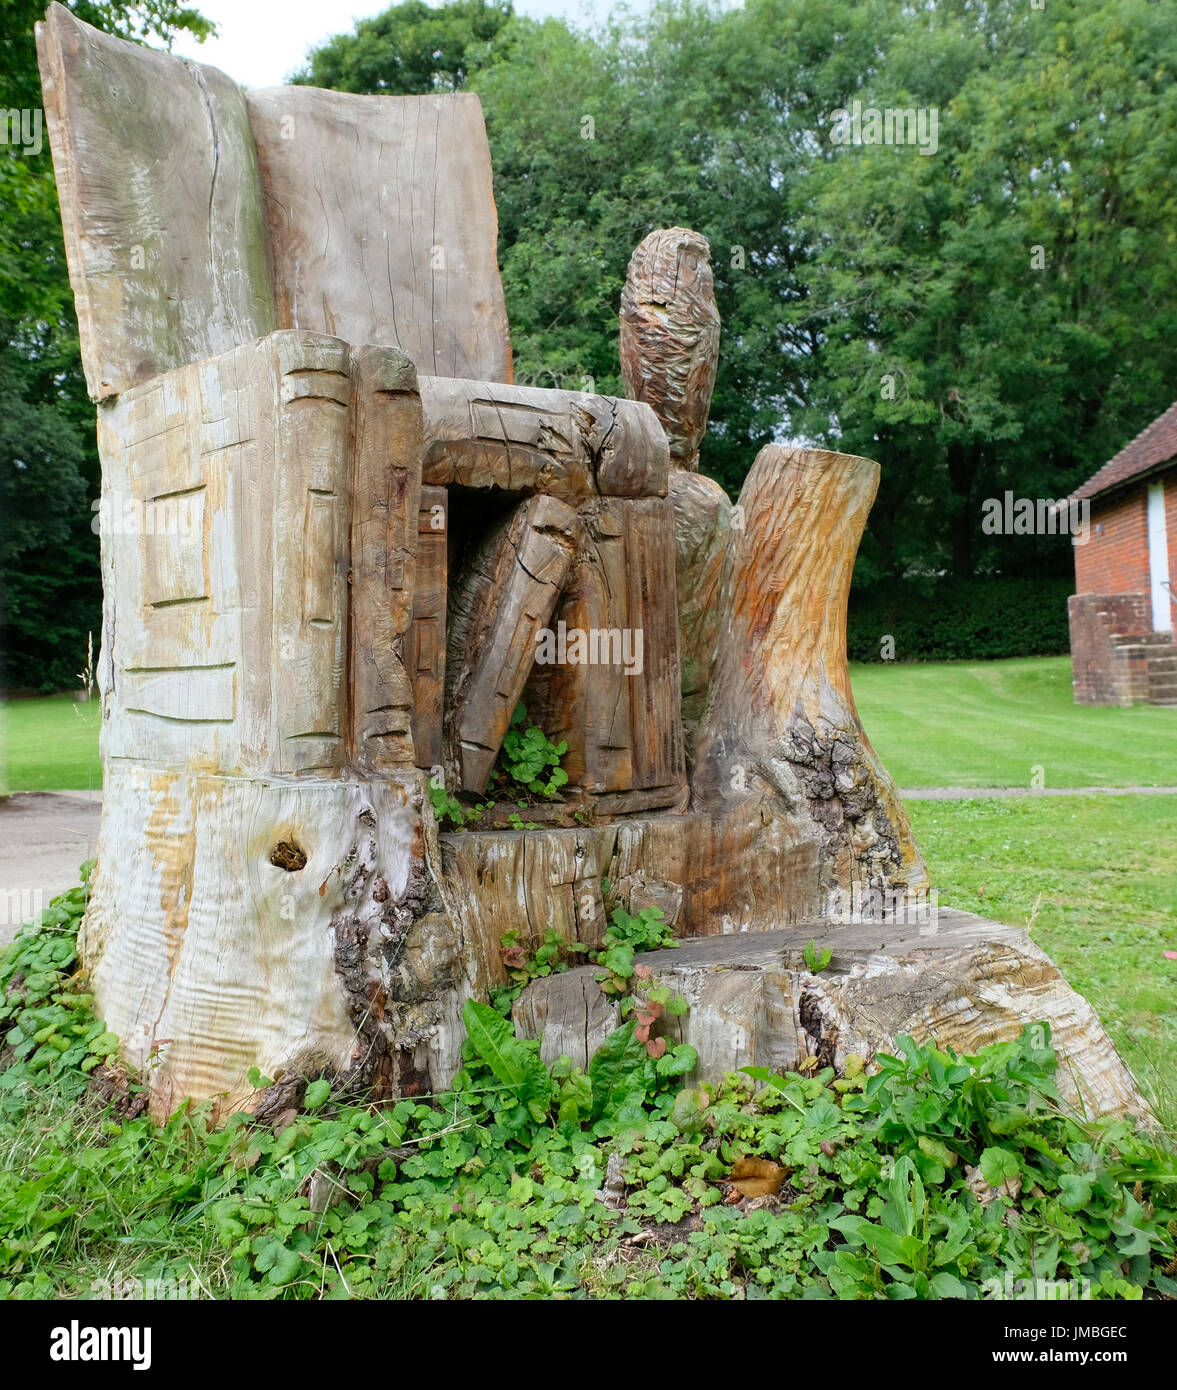 Grande piscine fauteuil avec books et owl, sculpté par une tronçonneuse d'un tronc d'arbre Banque D'Images